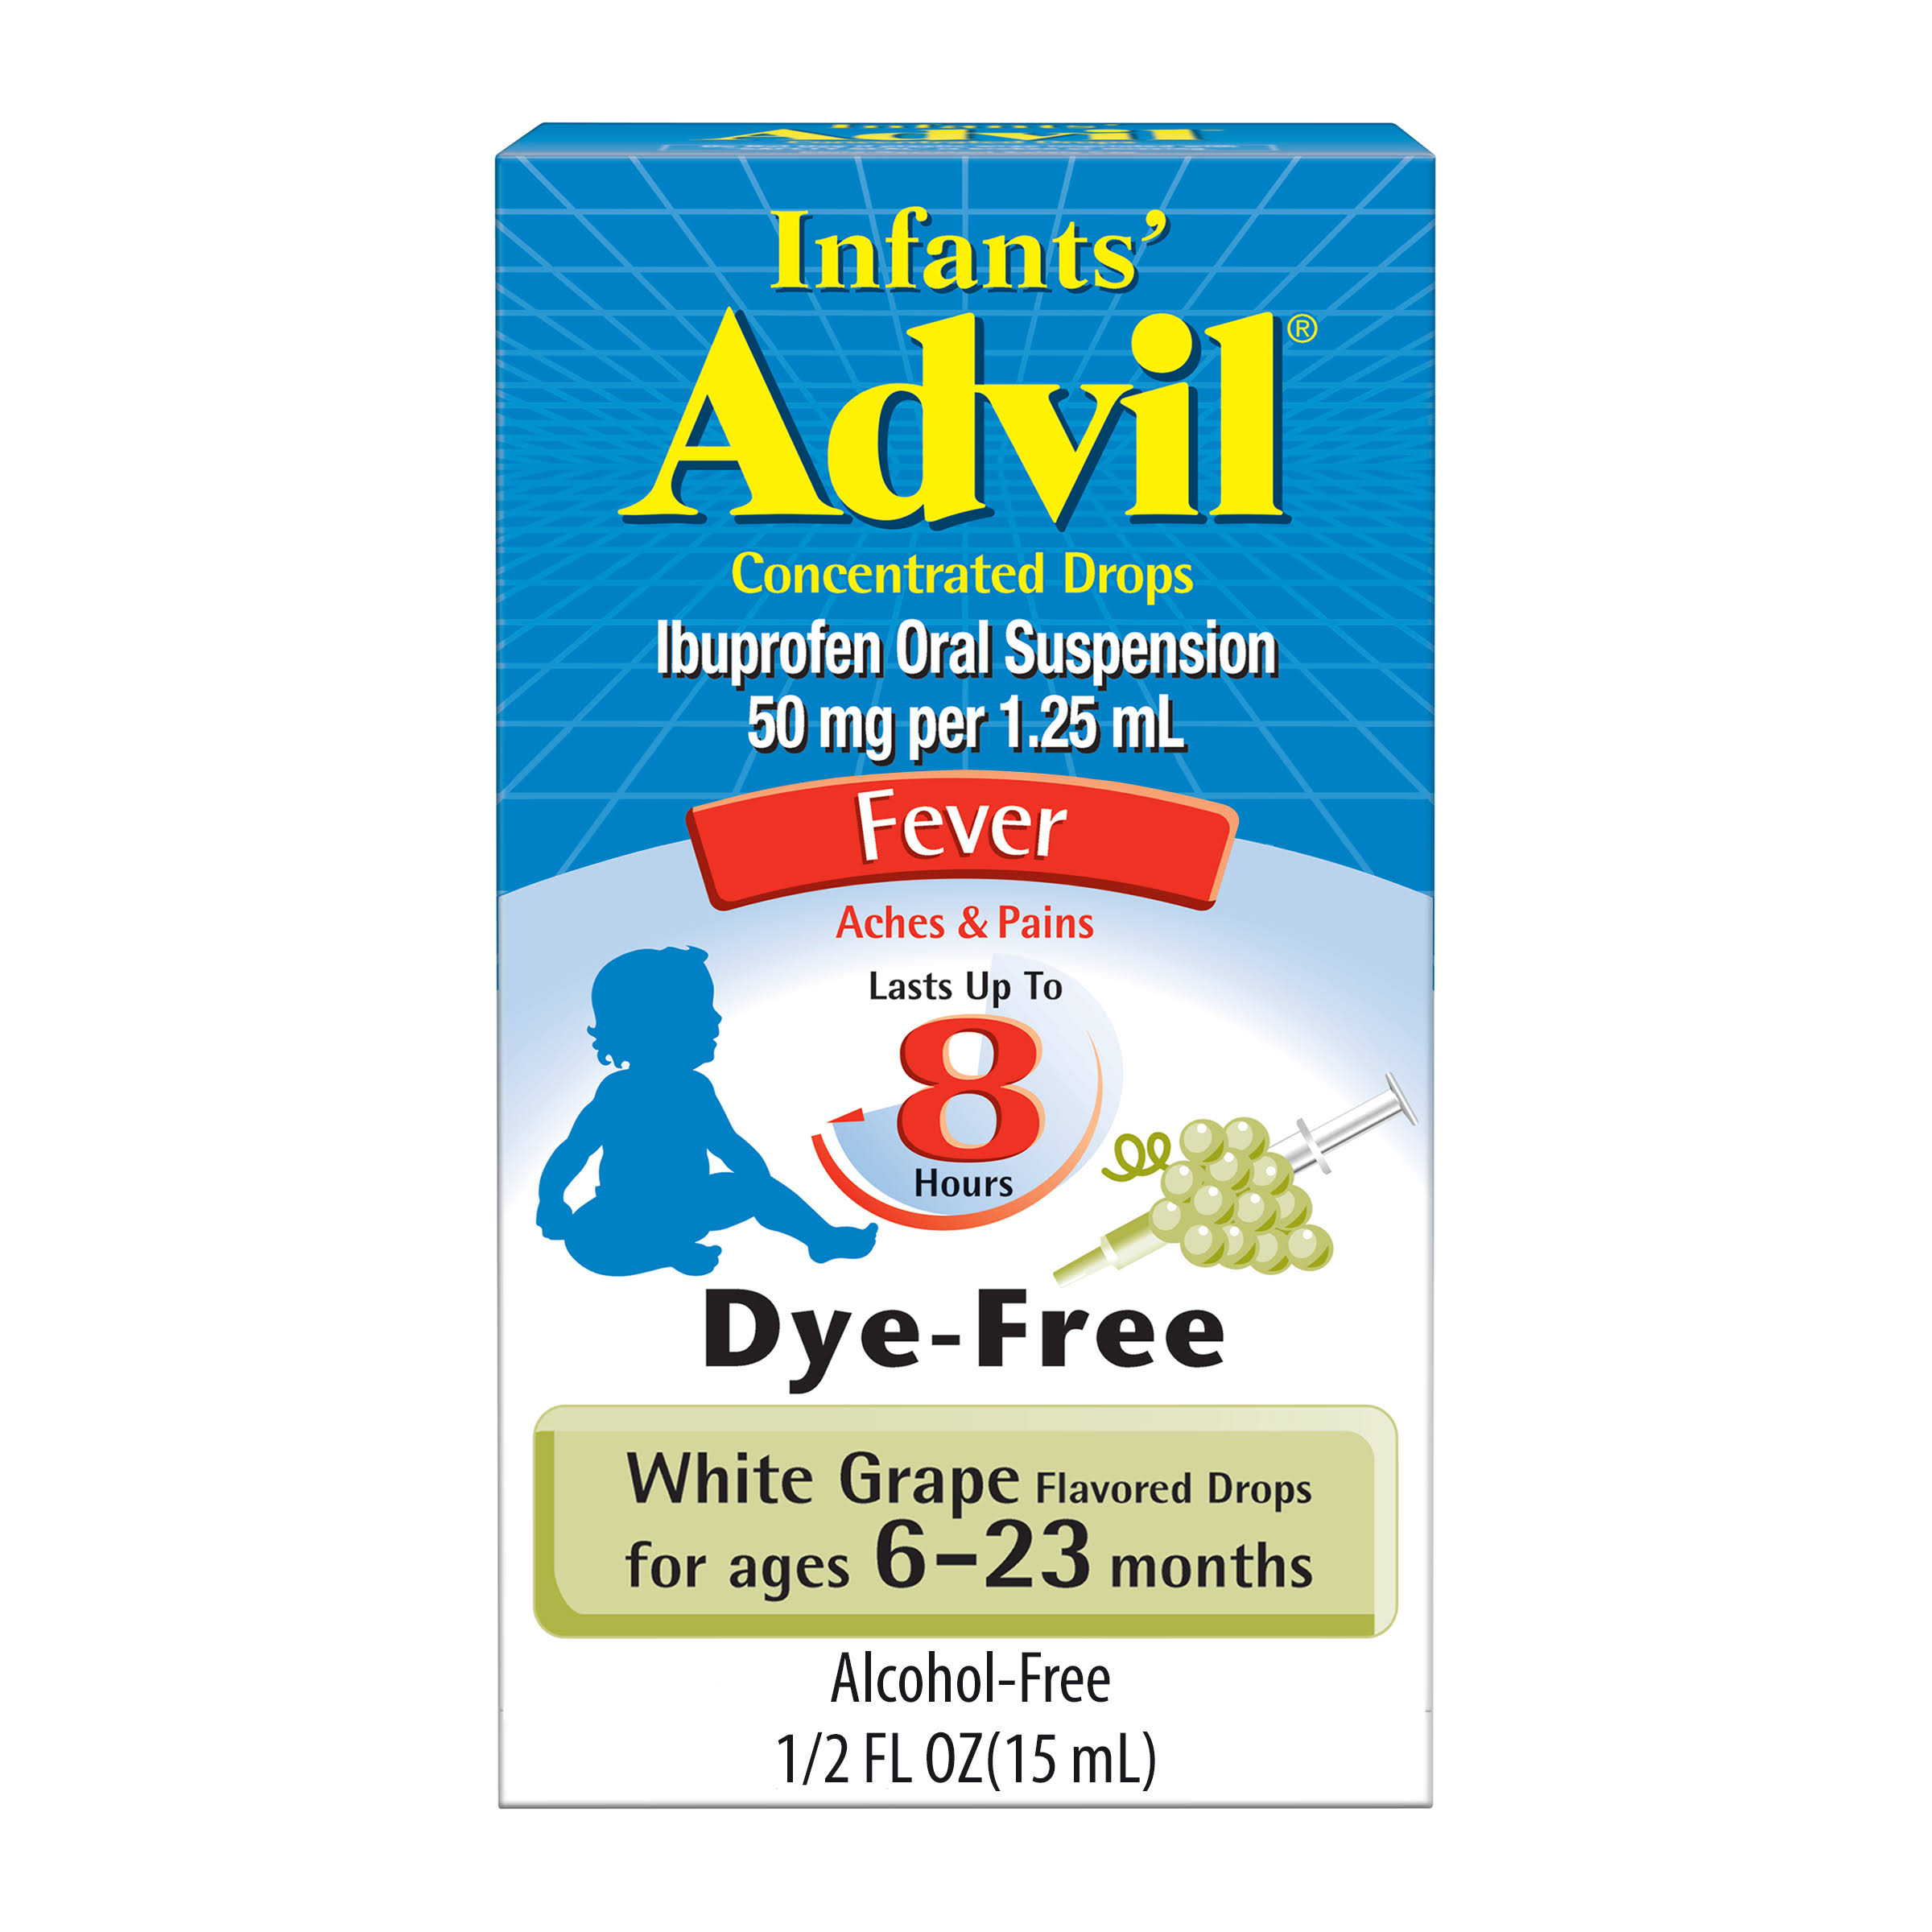 Advil Infant's Fever Reducer - White Grape, 50mg